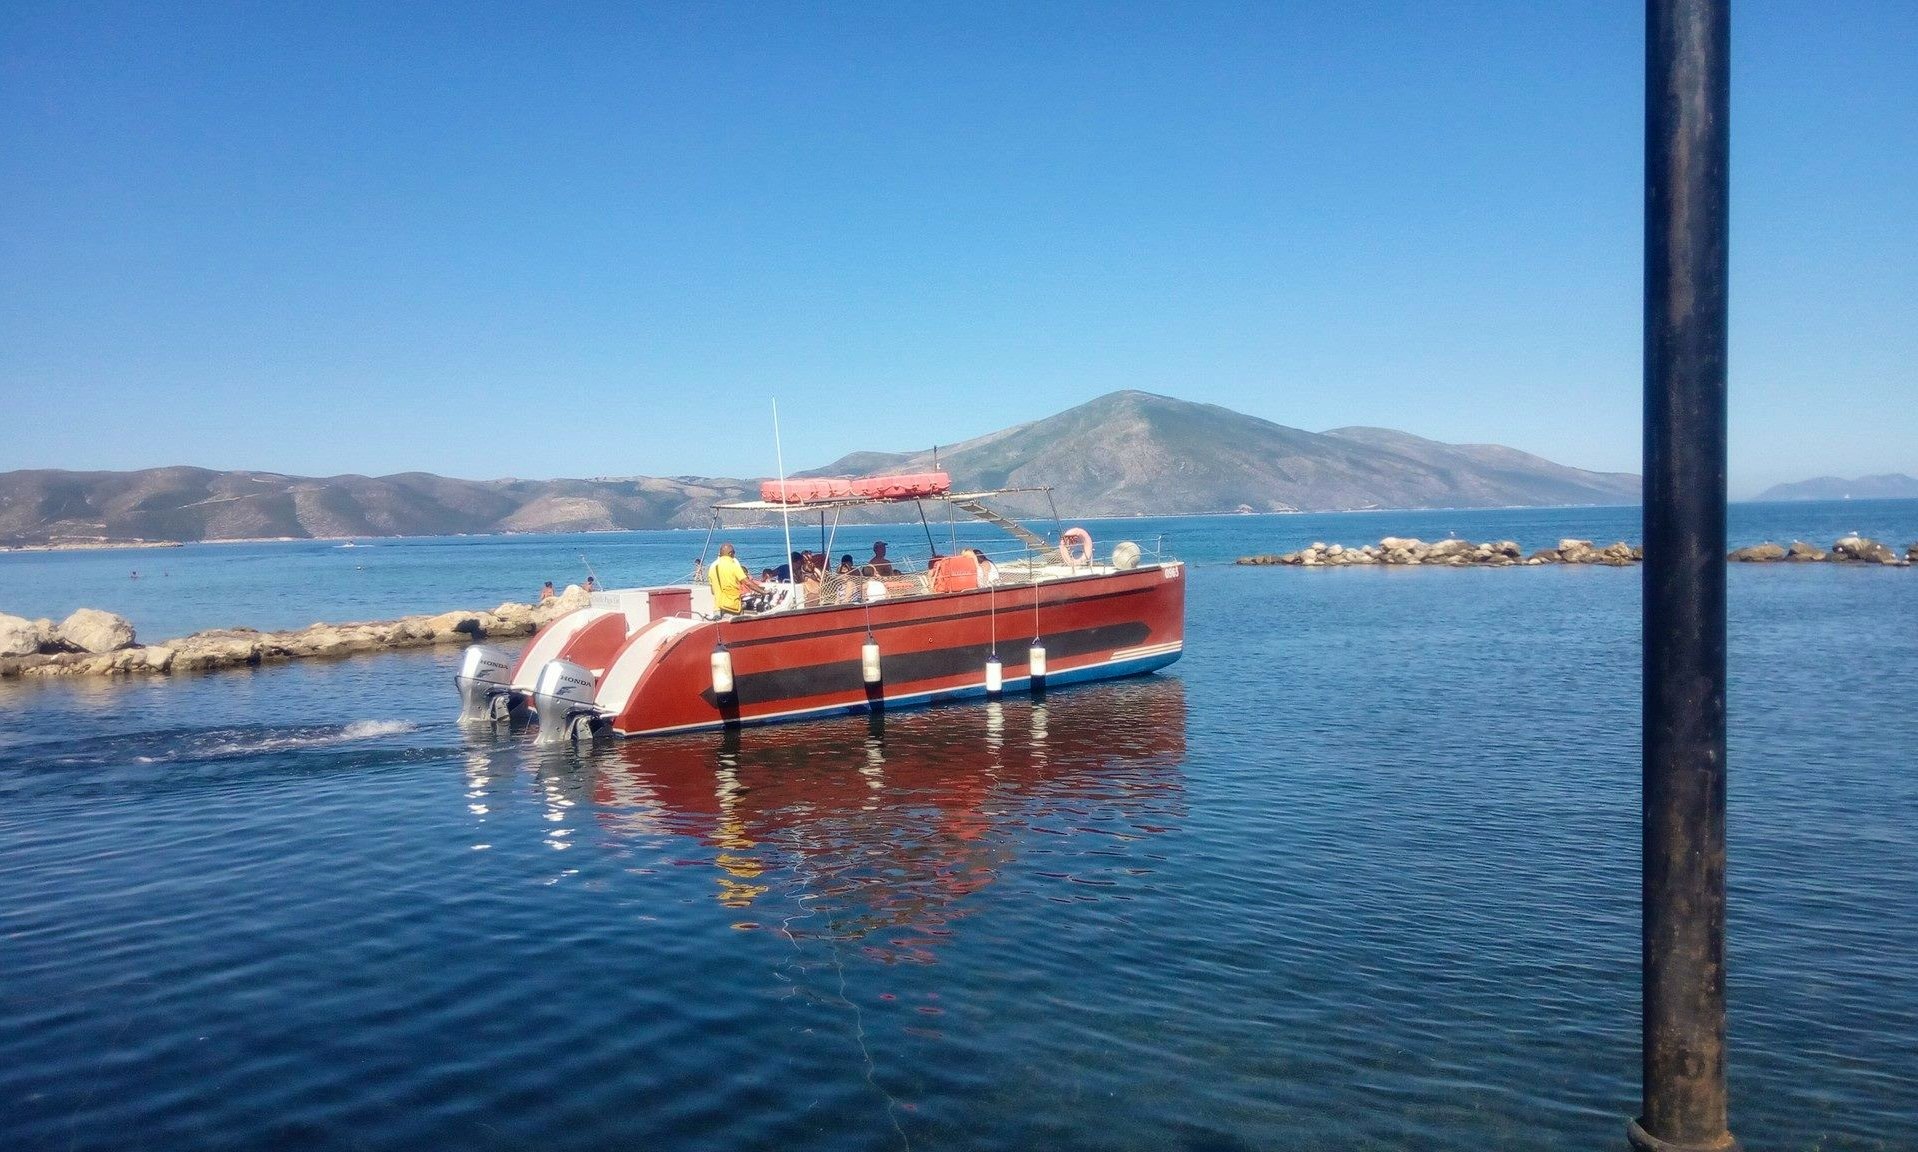 catamaran in albania